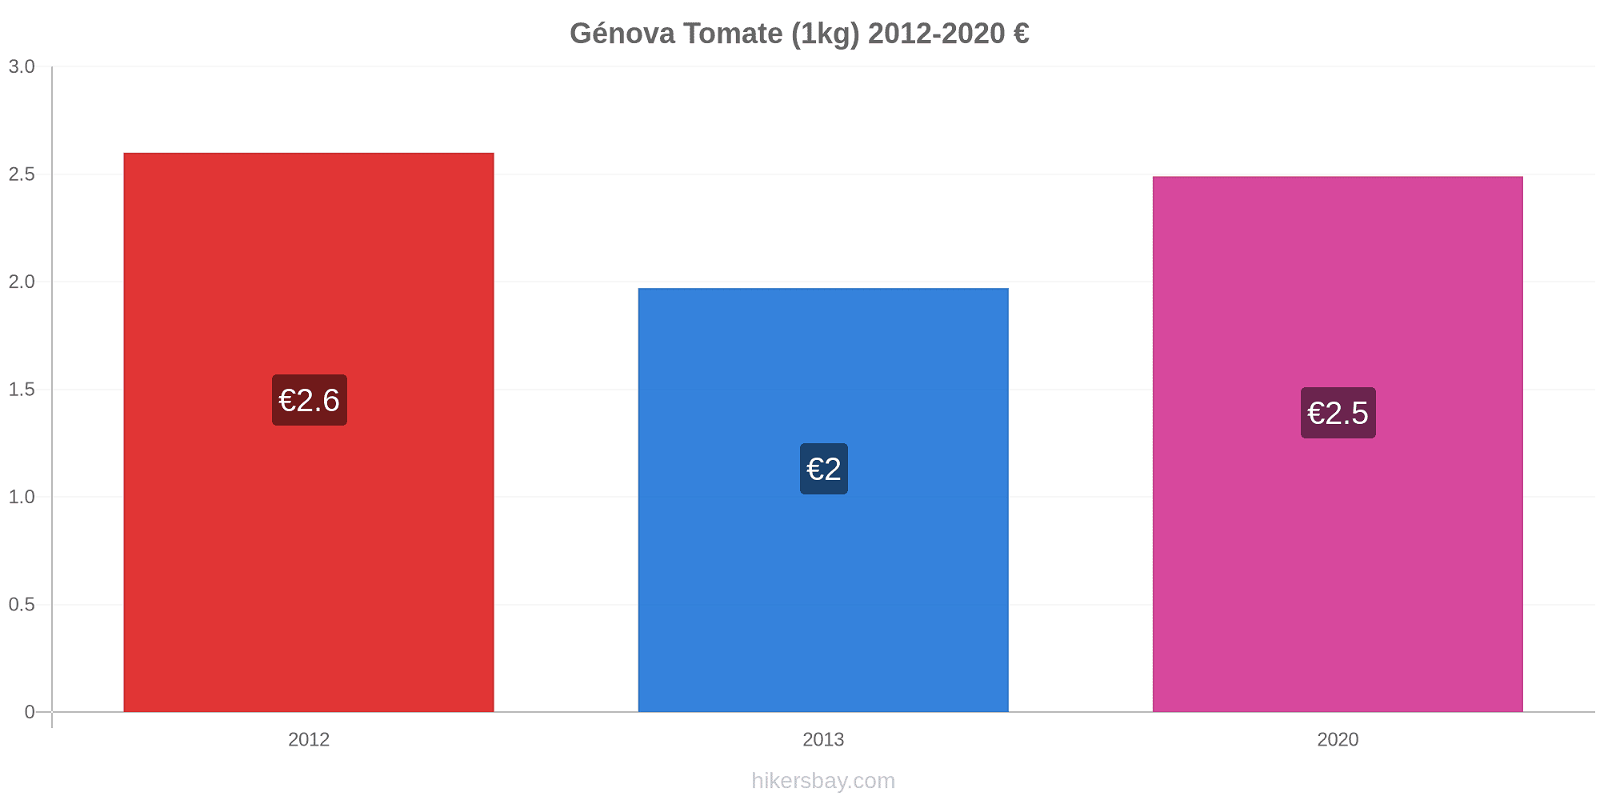 Génova cambios de precios Tomate (1kg) hikersbay.com